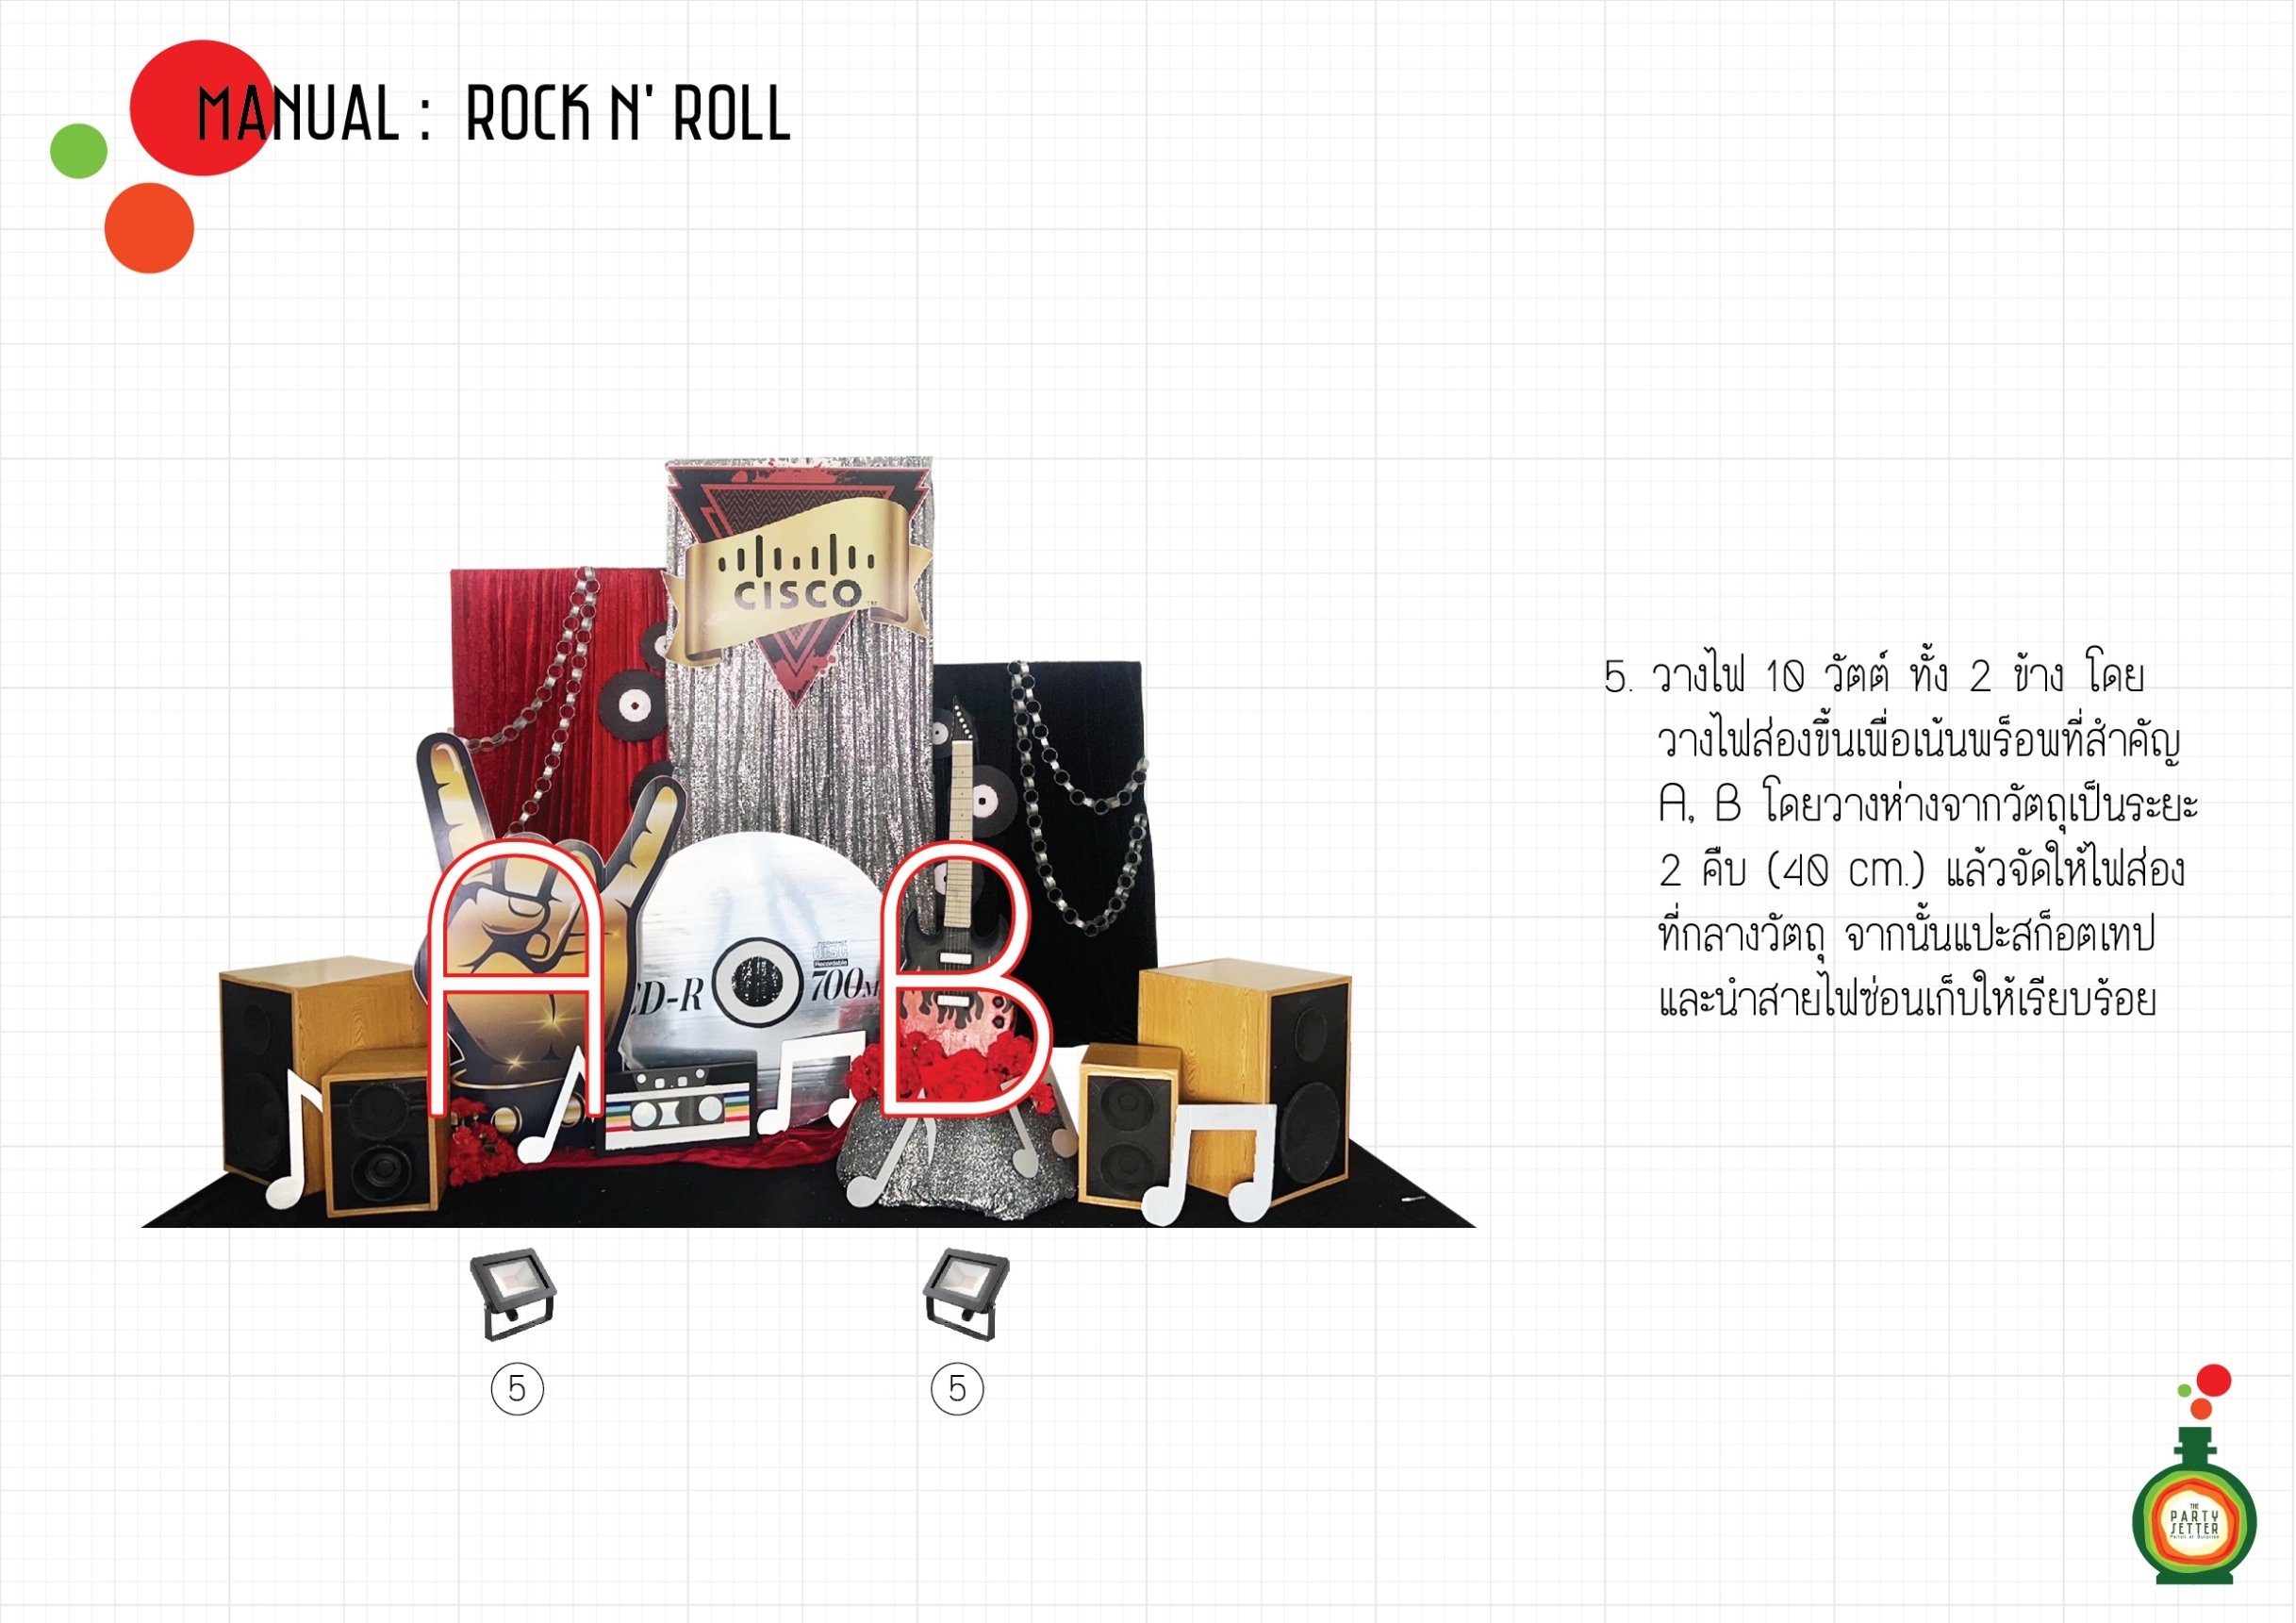 Manual_Rock n' Roll_05-01.jpg